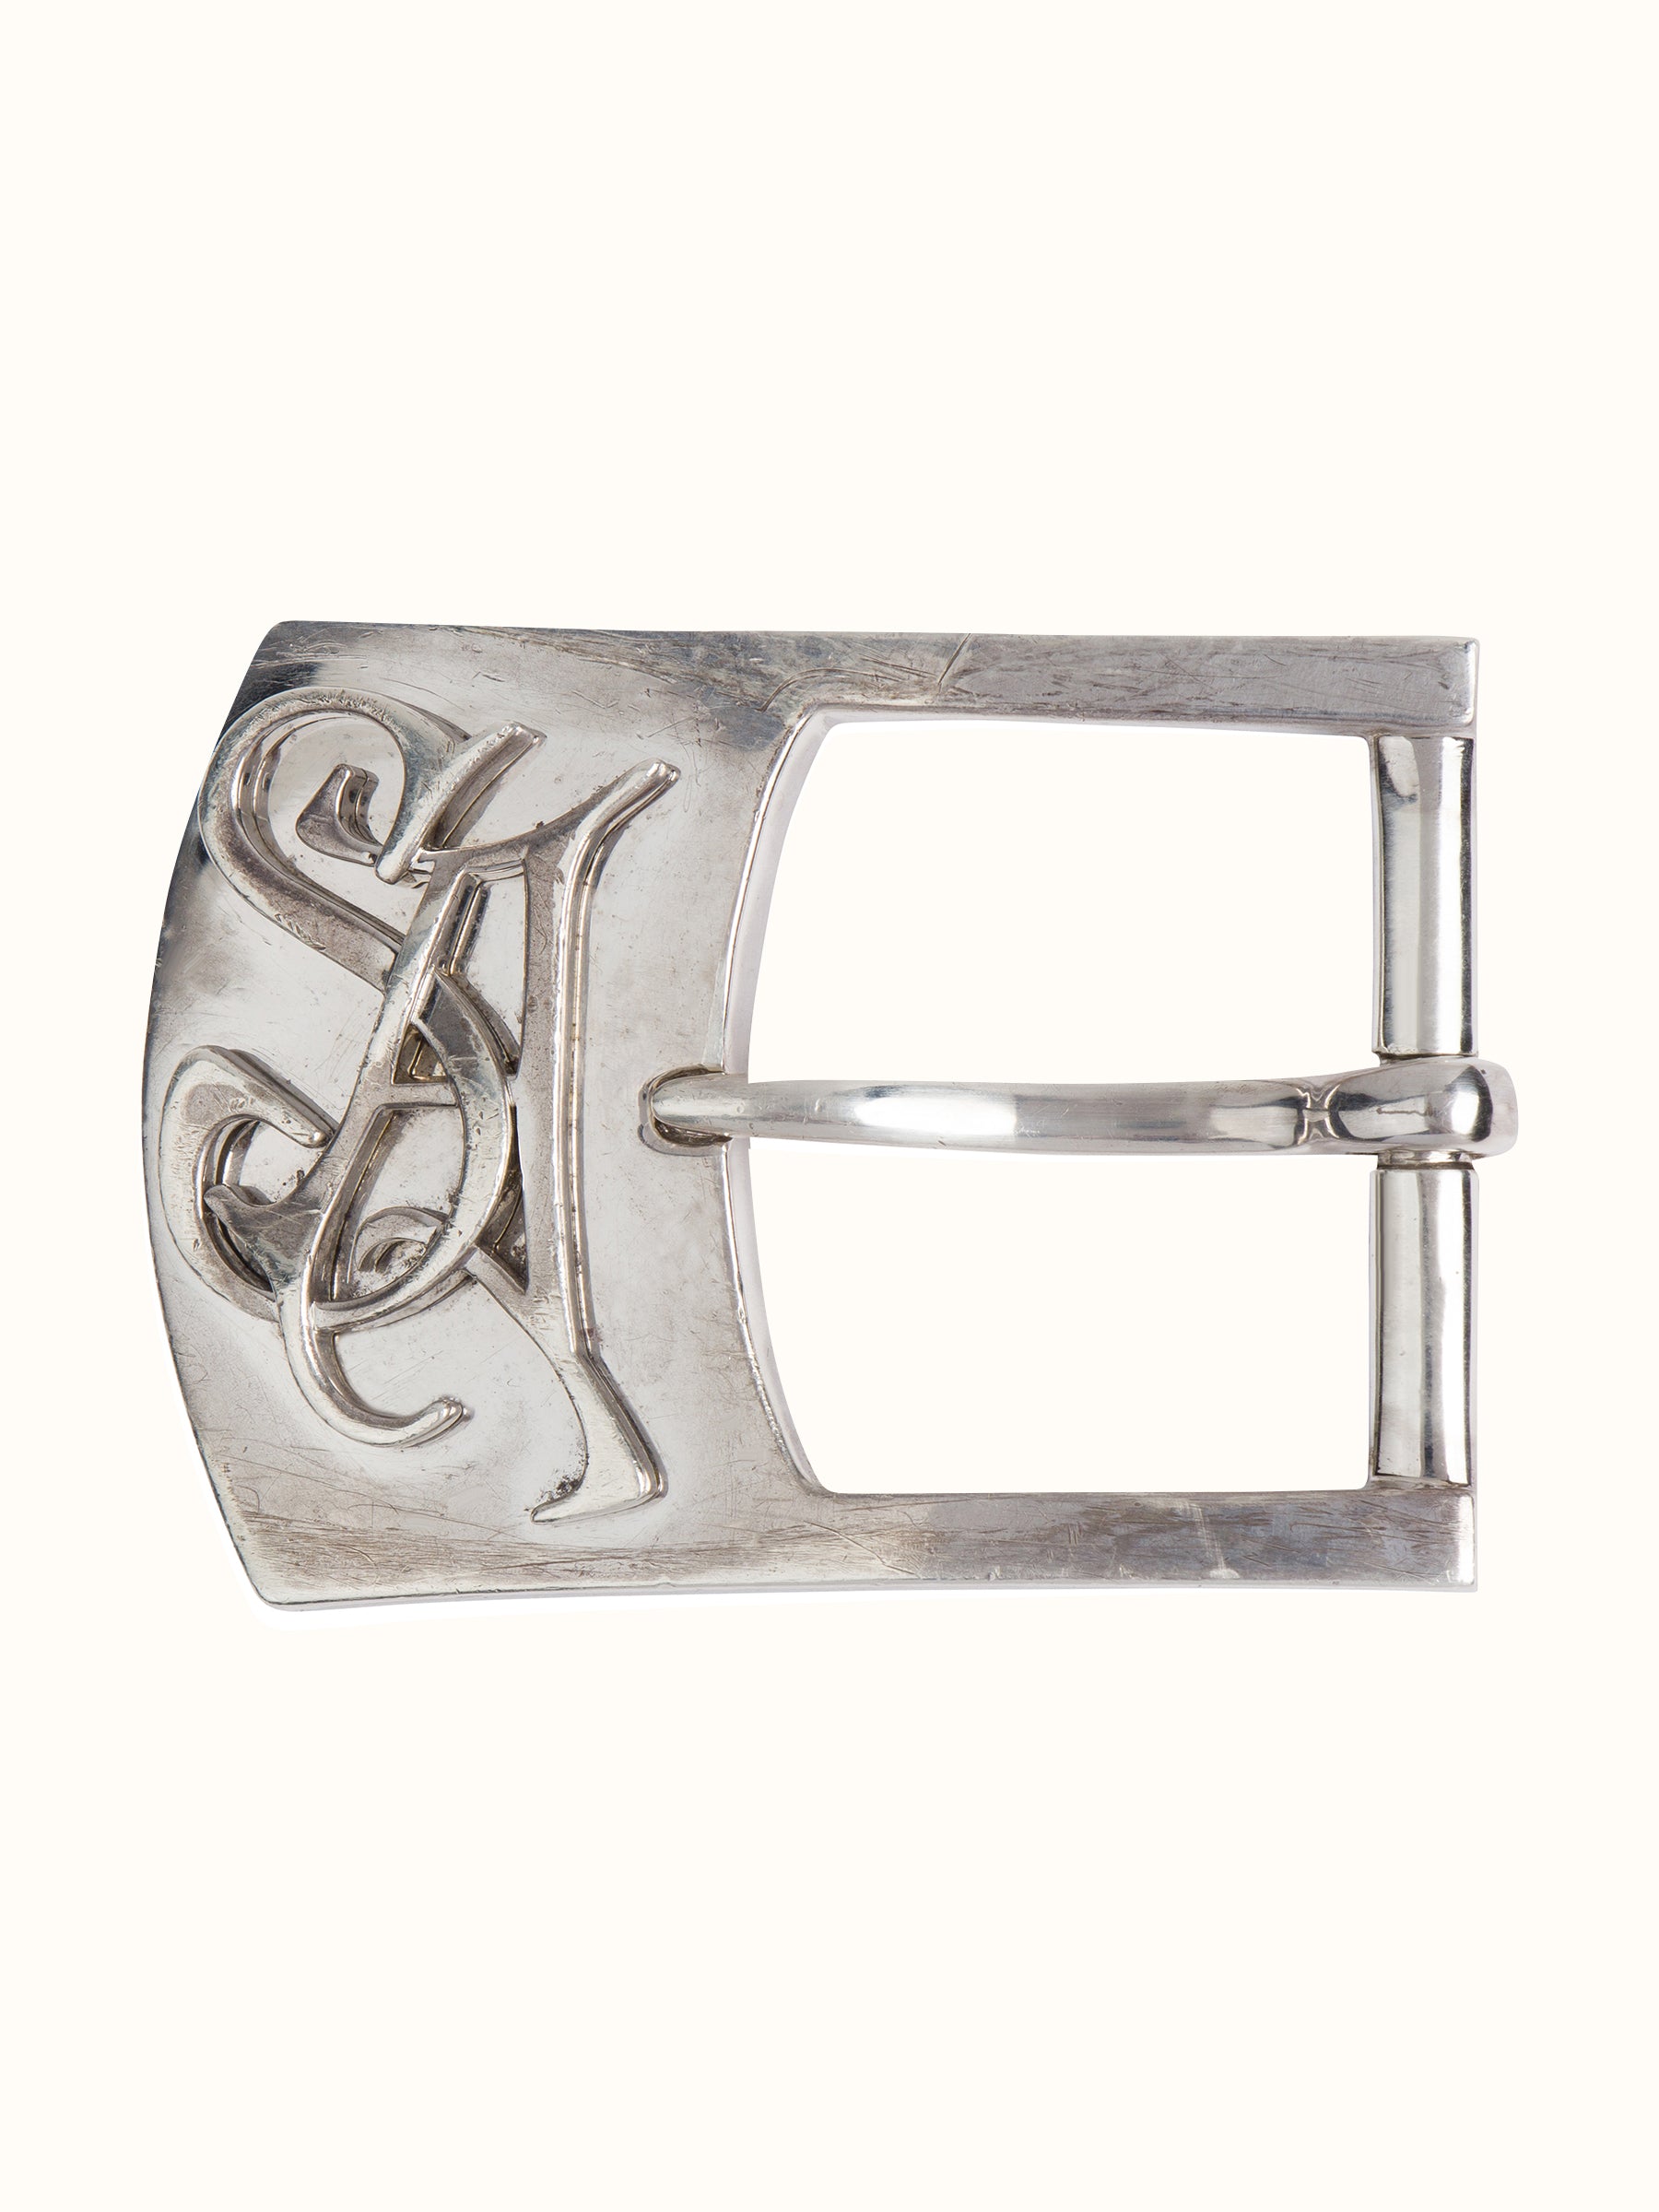 Custom Sterling Silver Belt Buckle, Western